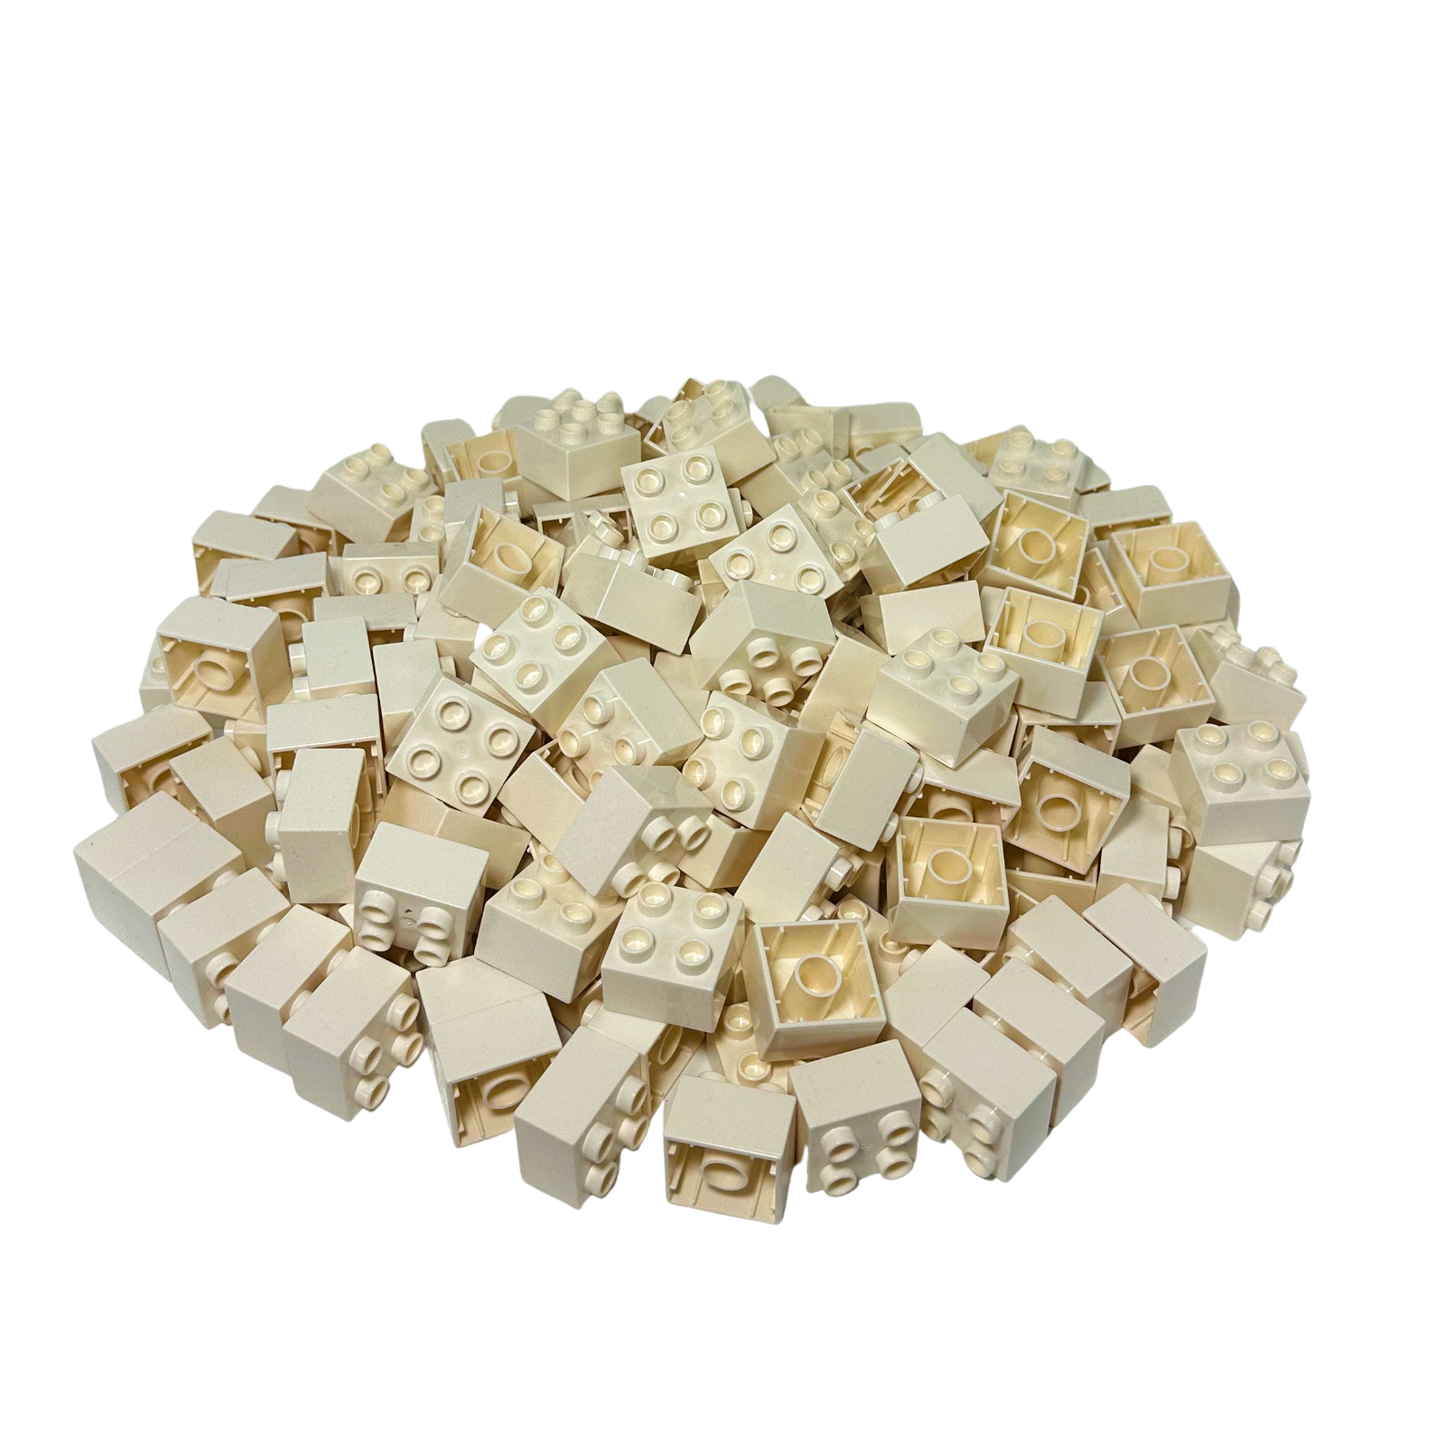 Klocki konstrukcyjne LEGO® DUPLO® 2x2 Basic białe - 3437 NOWOŚĆ!  Ilość: 10x